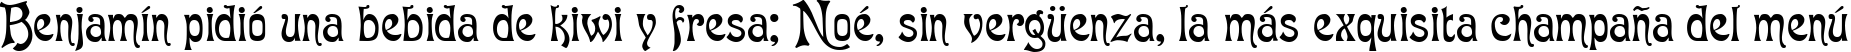 Пример написания шрифтом Baron Munchausen Normal текста на испанском